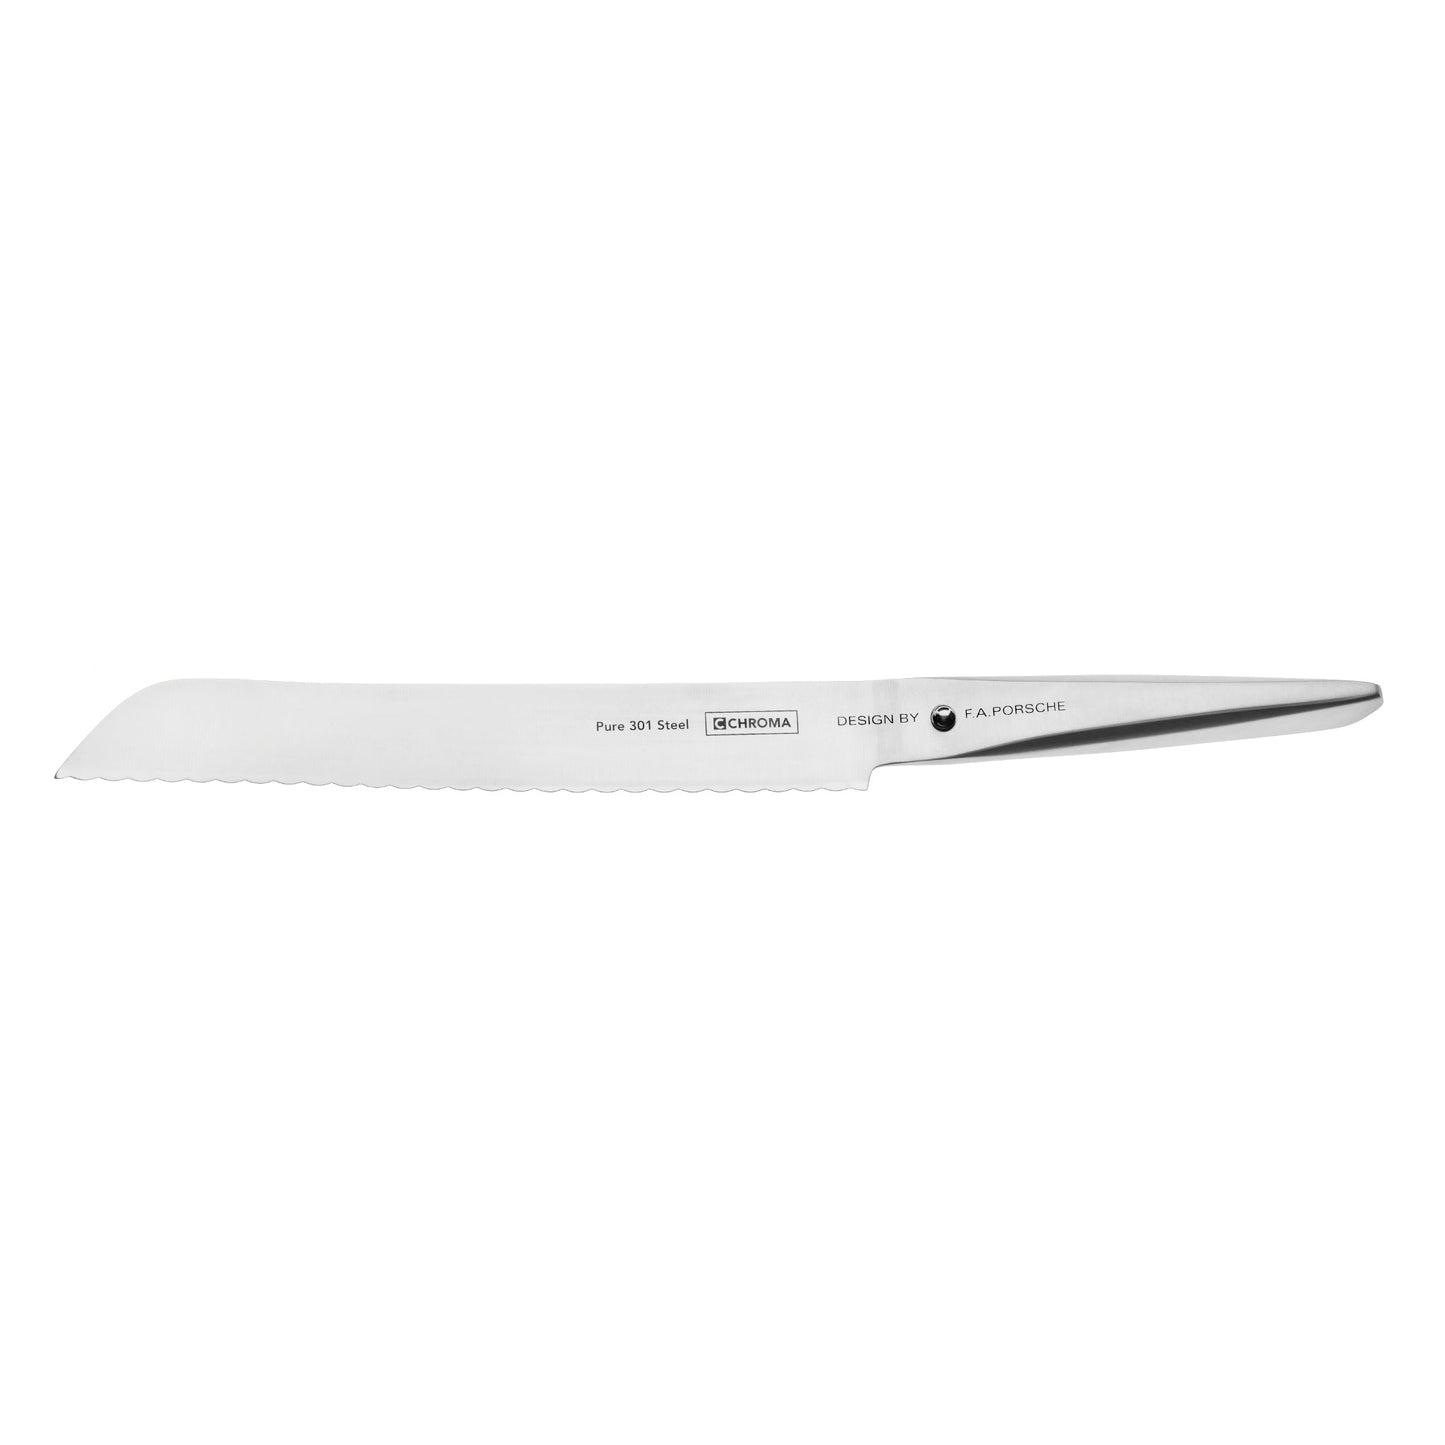 Type 301 - Couteau à pain, 20,9 cm